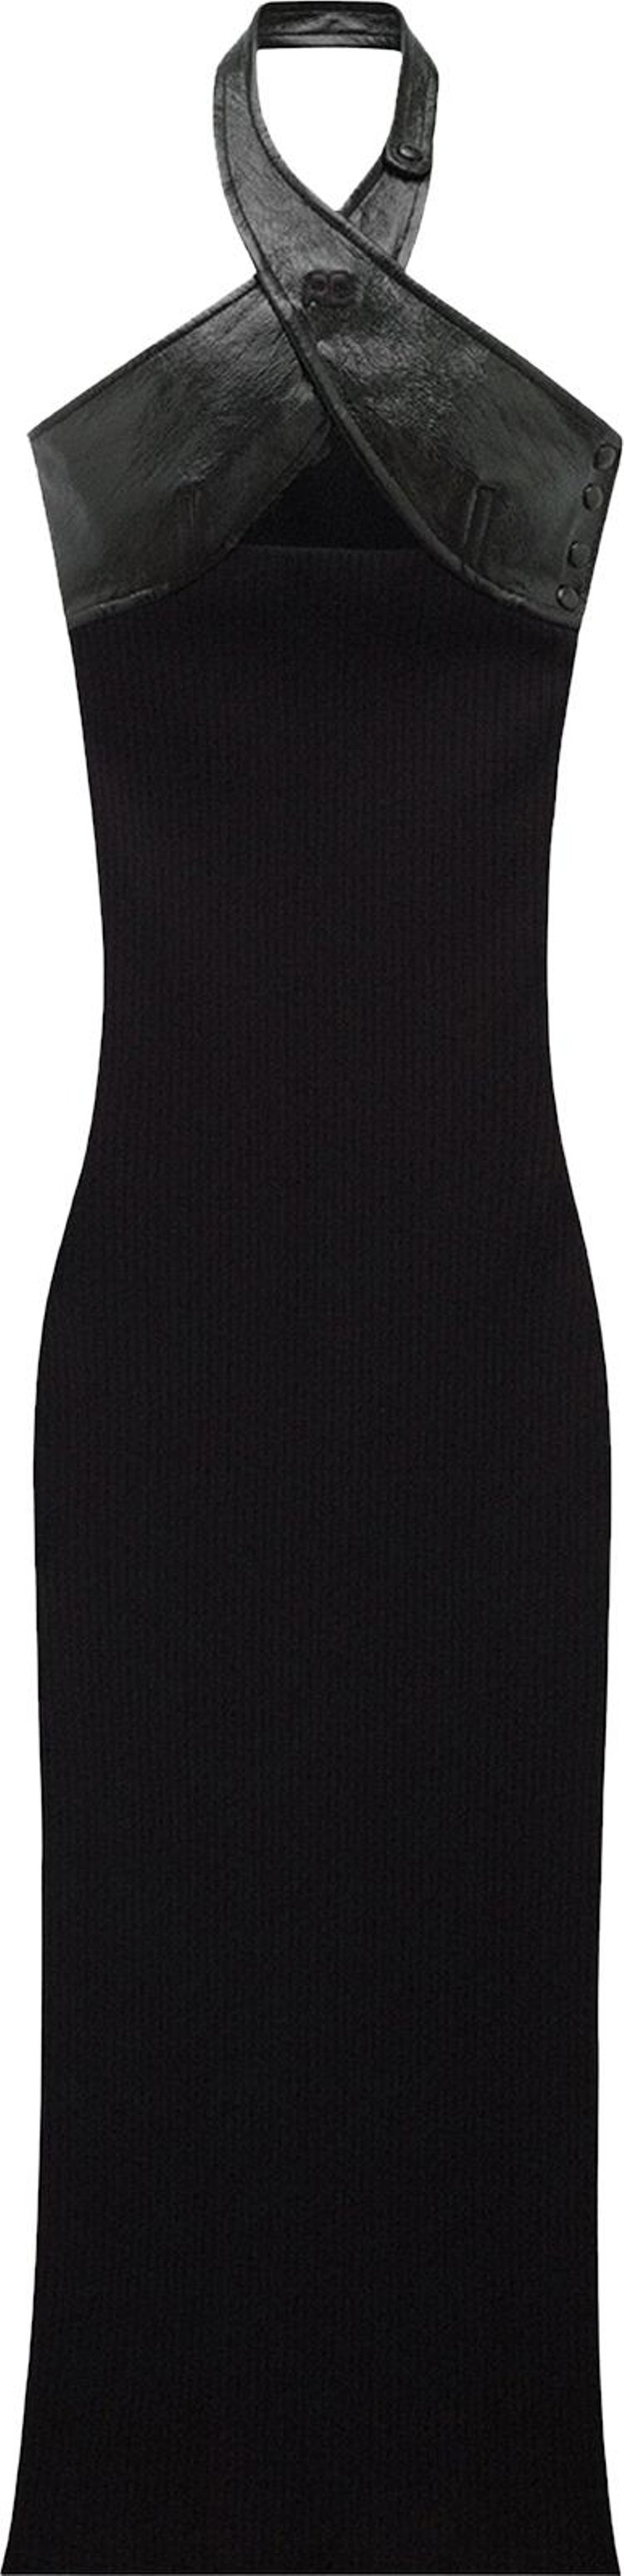 Courrèges Vinyl Knit Criss Cross Dress 'Black'